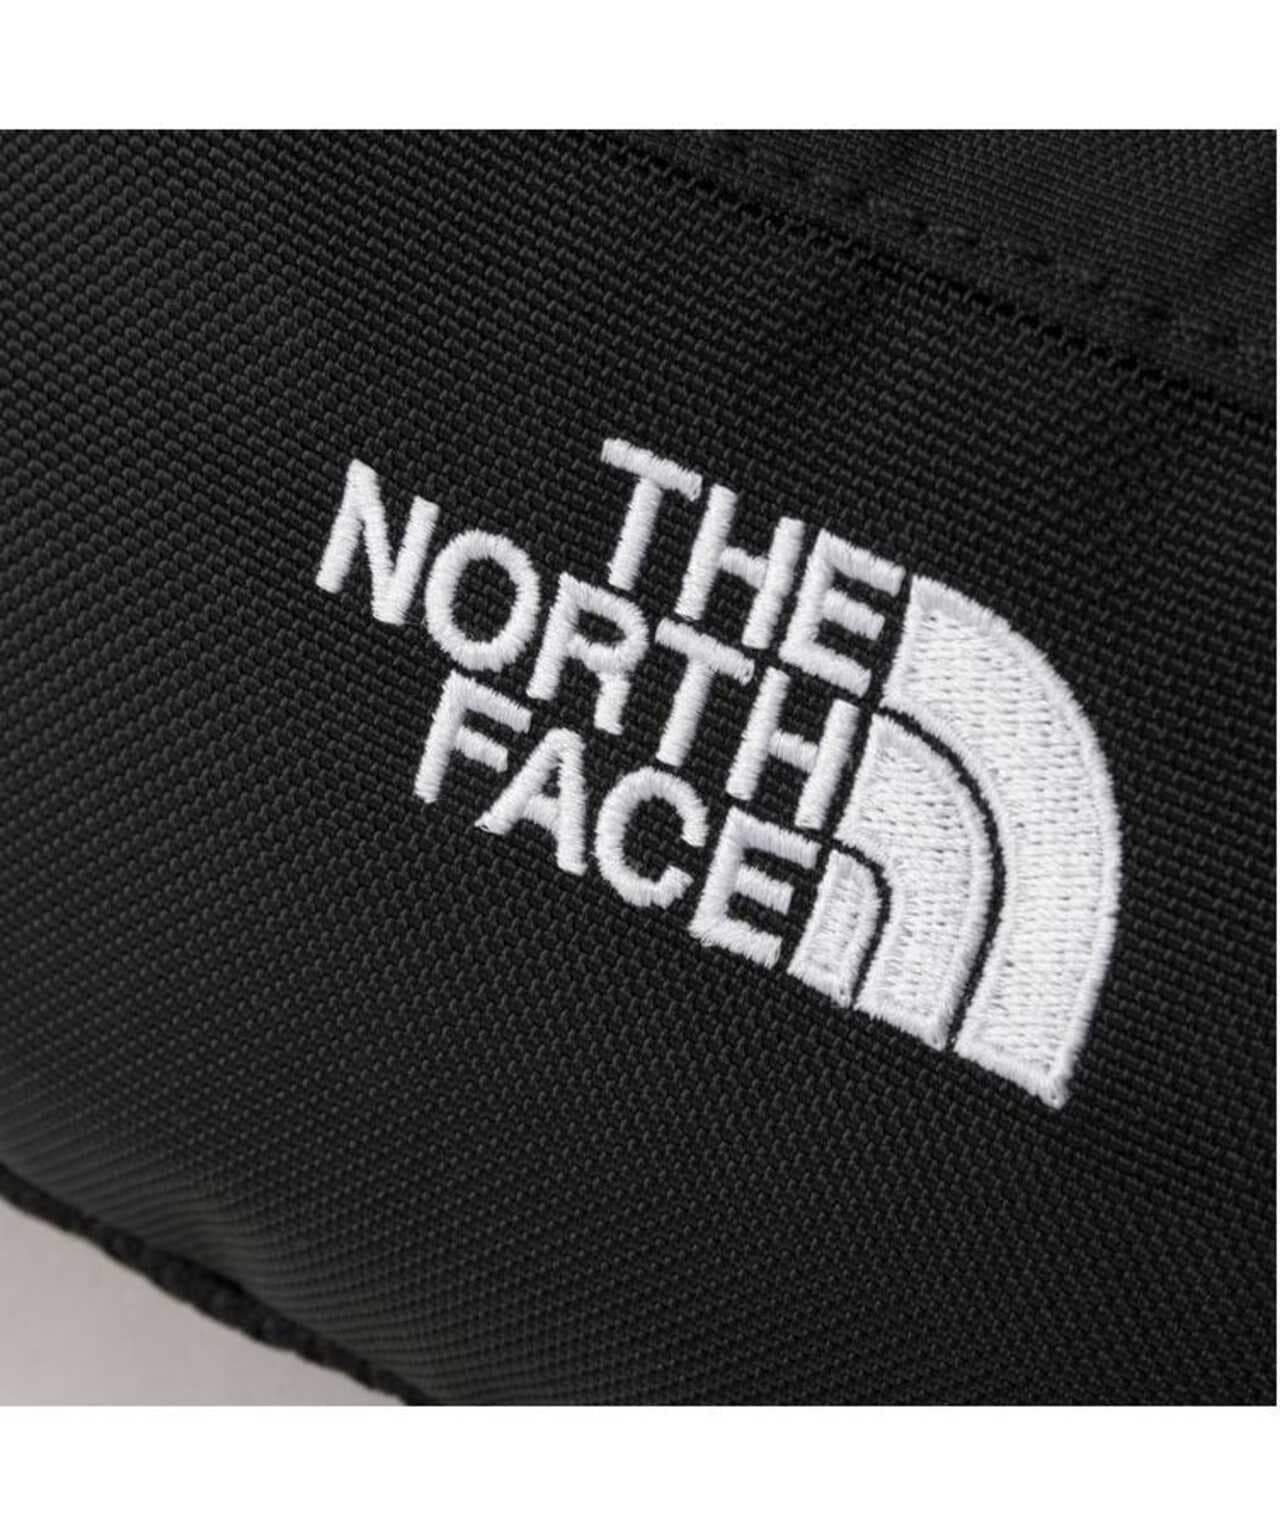 THE NORTH FACE/ザ・ノースフェイス/Granule/グラニュール